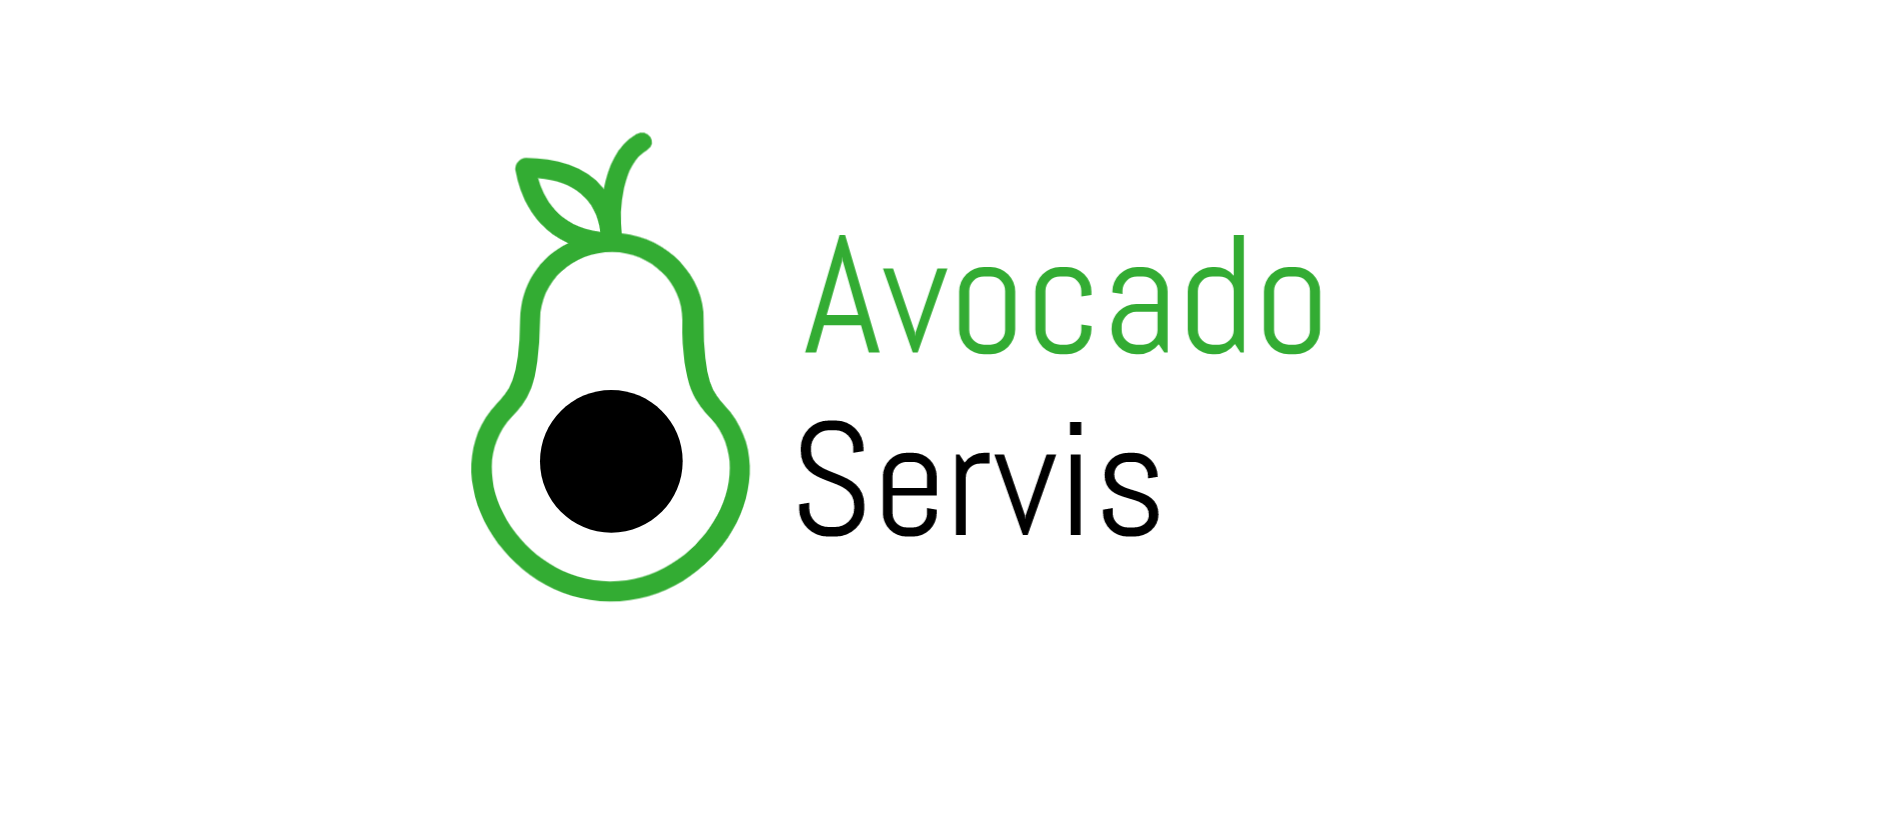 Avocado Servis